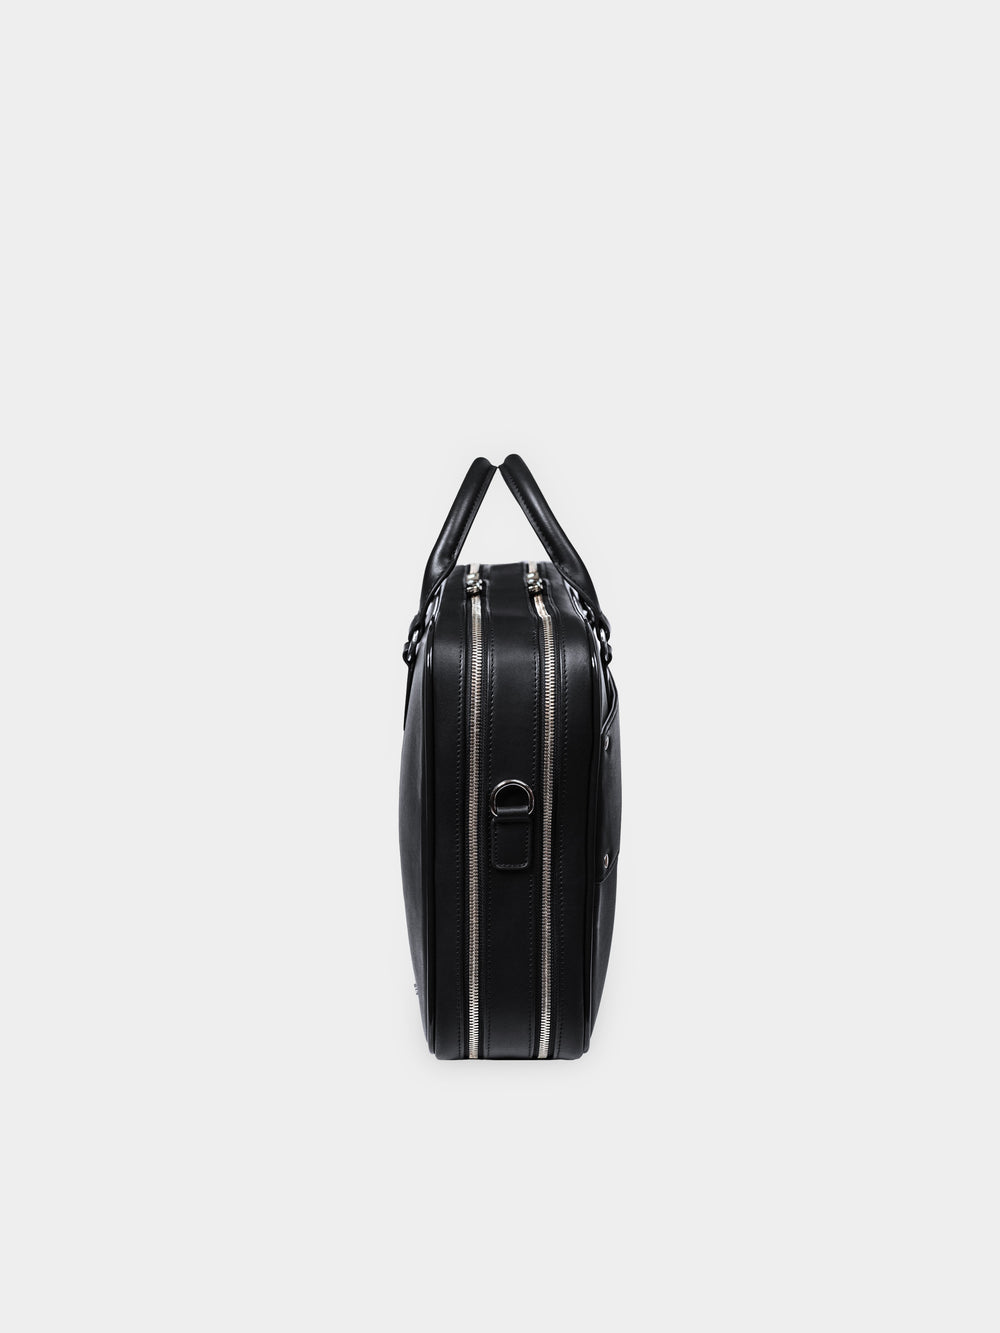 f26 black leather briefcase schwarzes leder